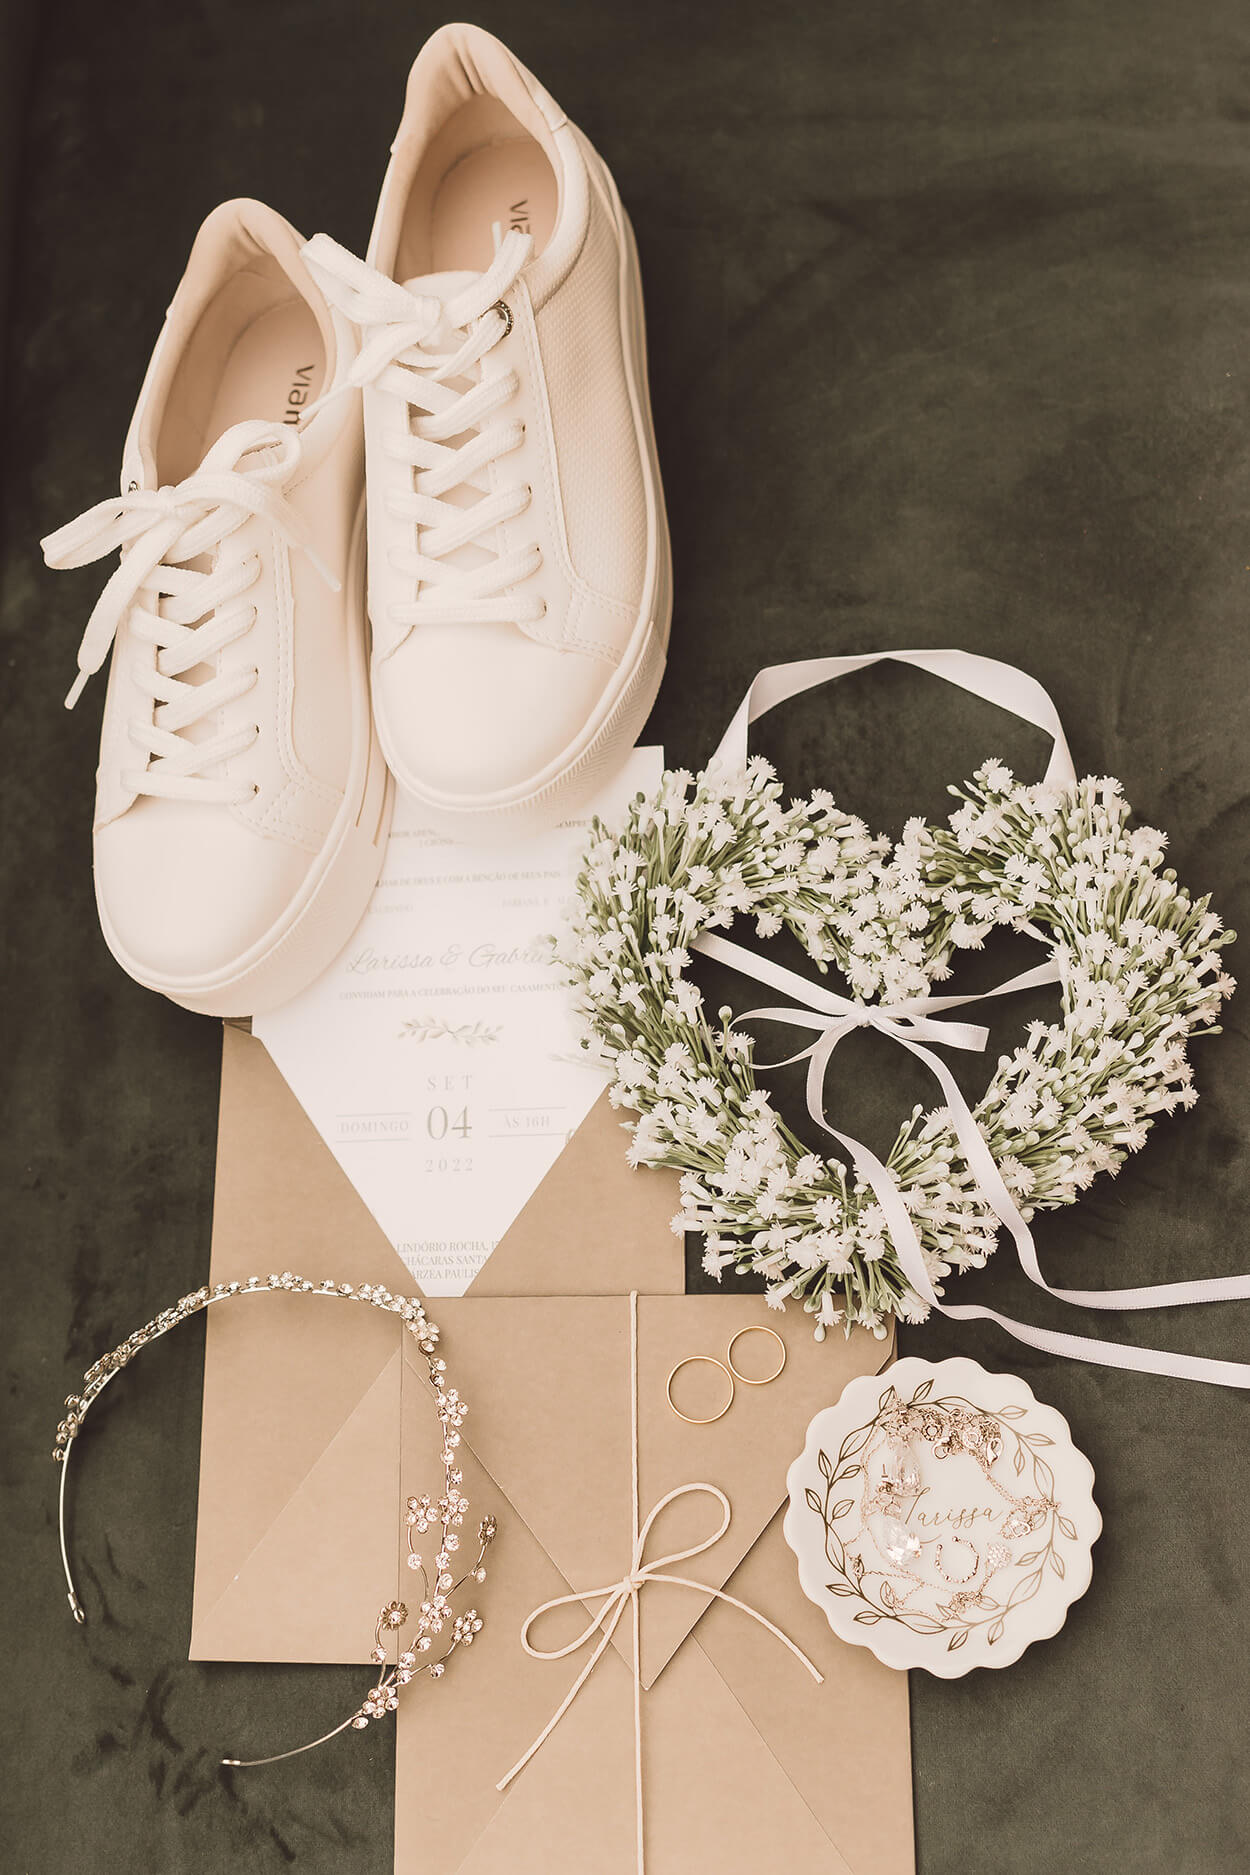 Convite de casamento branco e bege e tênis branco e porta aliança em formato de coração